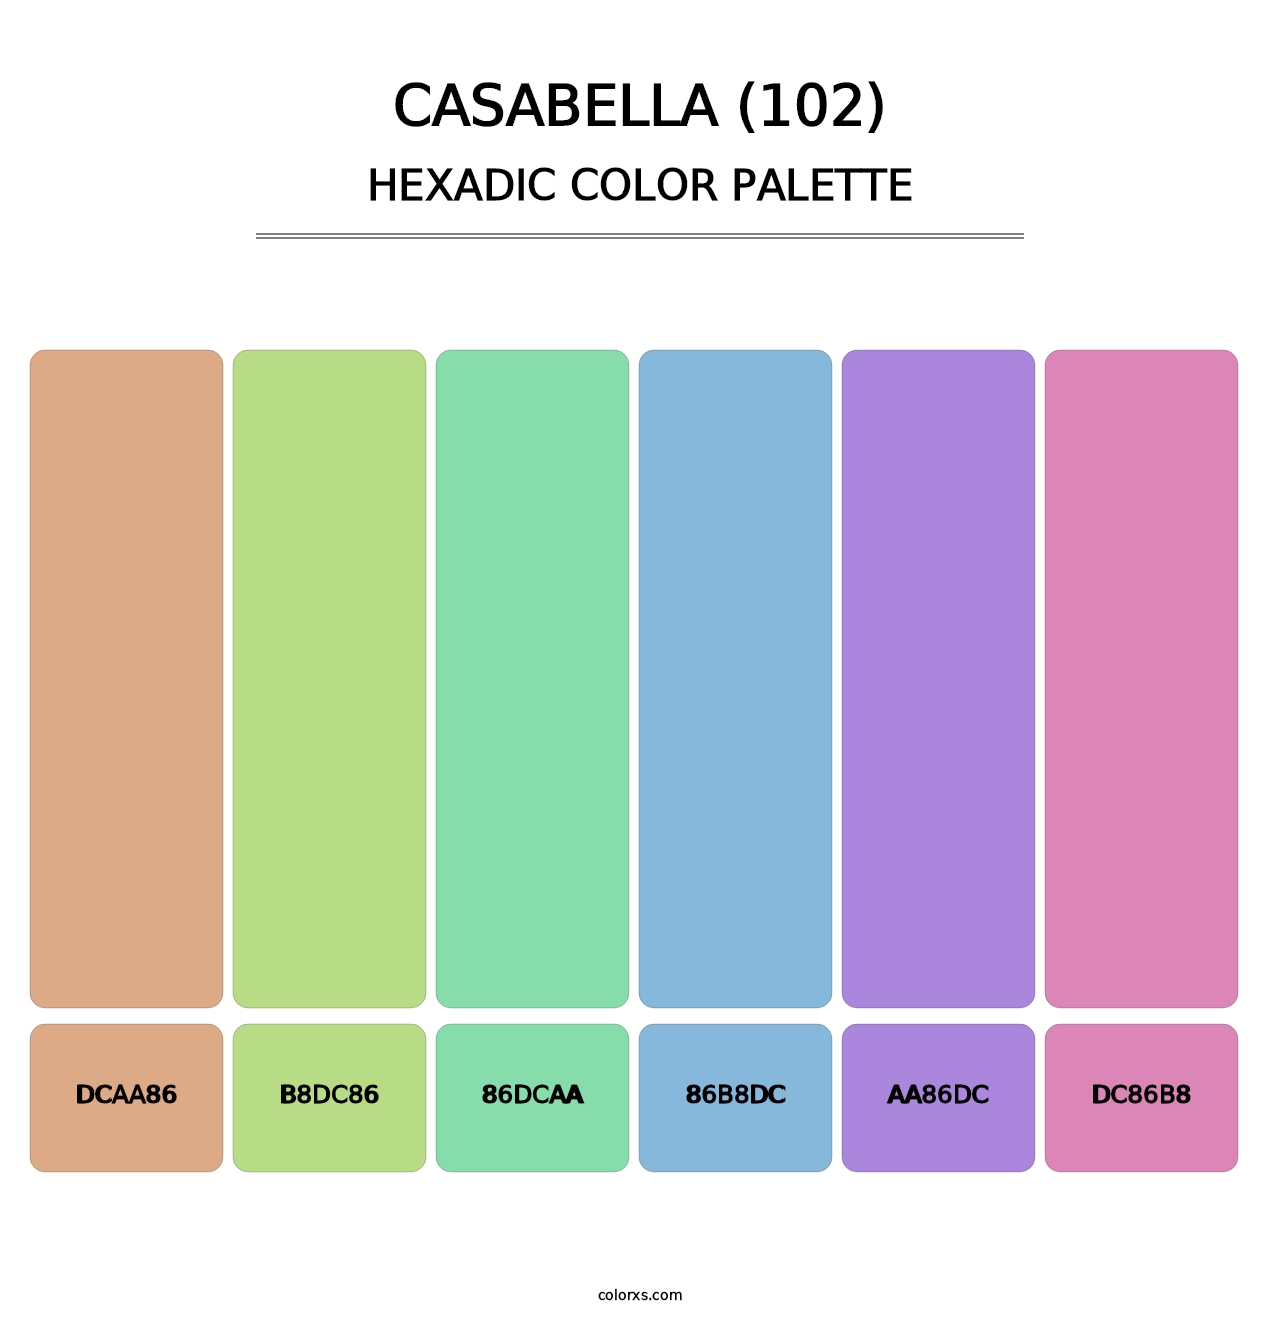 Casabella (102) - Hexadic Color Palette